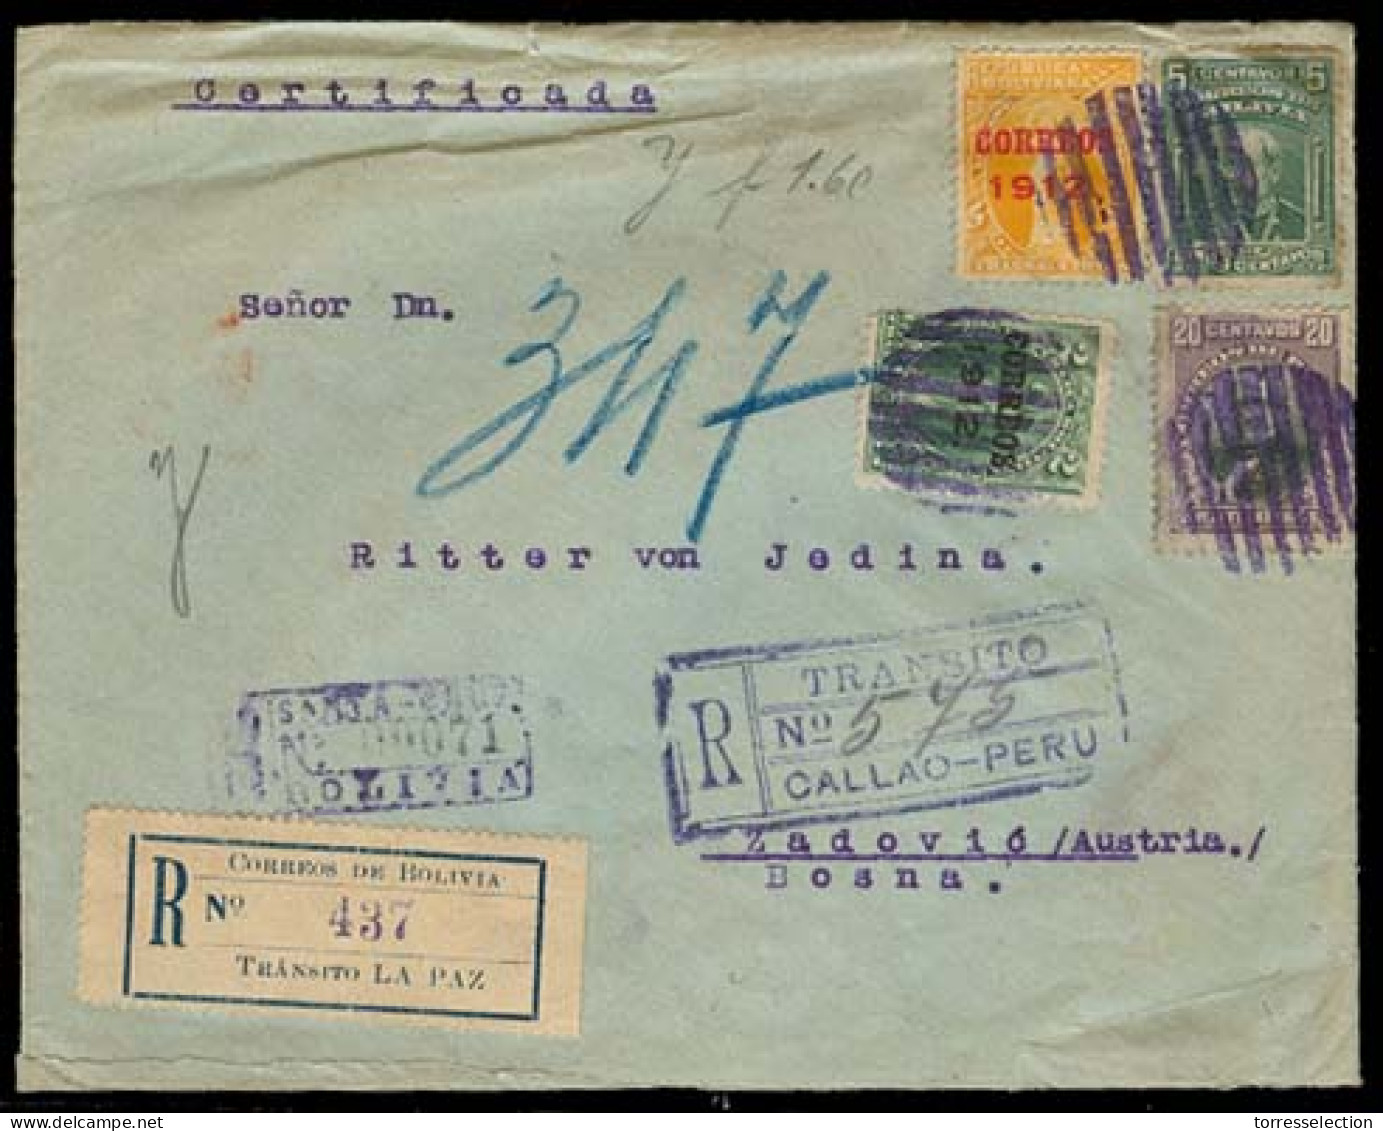 BOLIVIA. 1914. Santa Cruz - Bosnia / Zadovic.  Registered Multicolor Env. Via La Paz - Peru/Callao. V Rare Dest Mail. - Bolivien